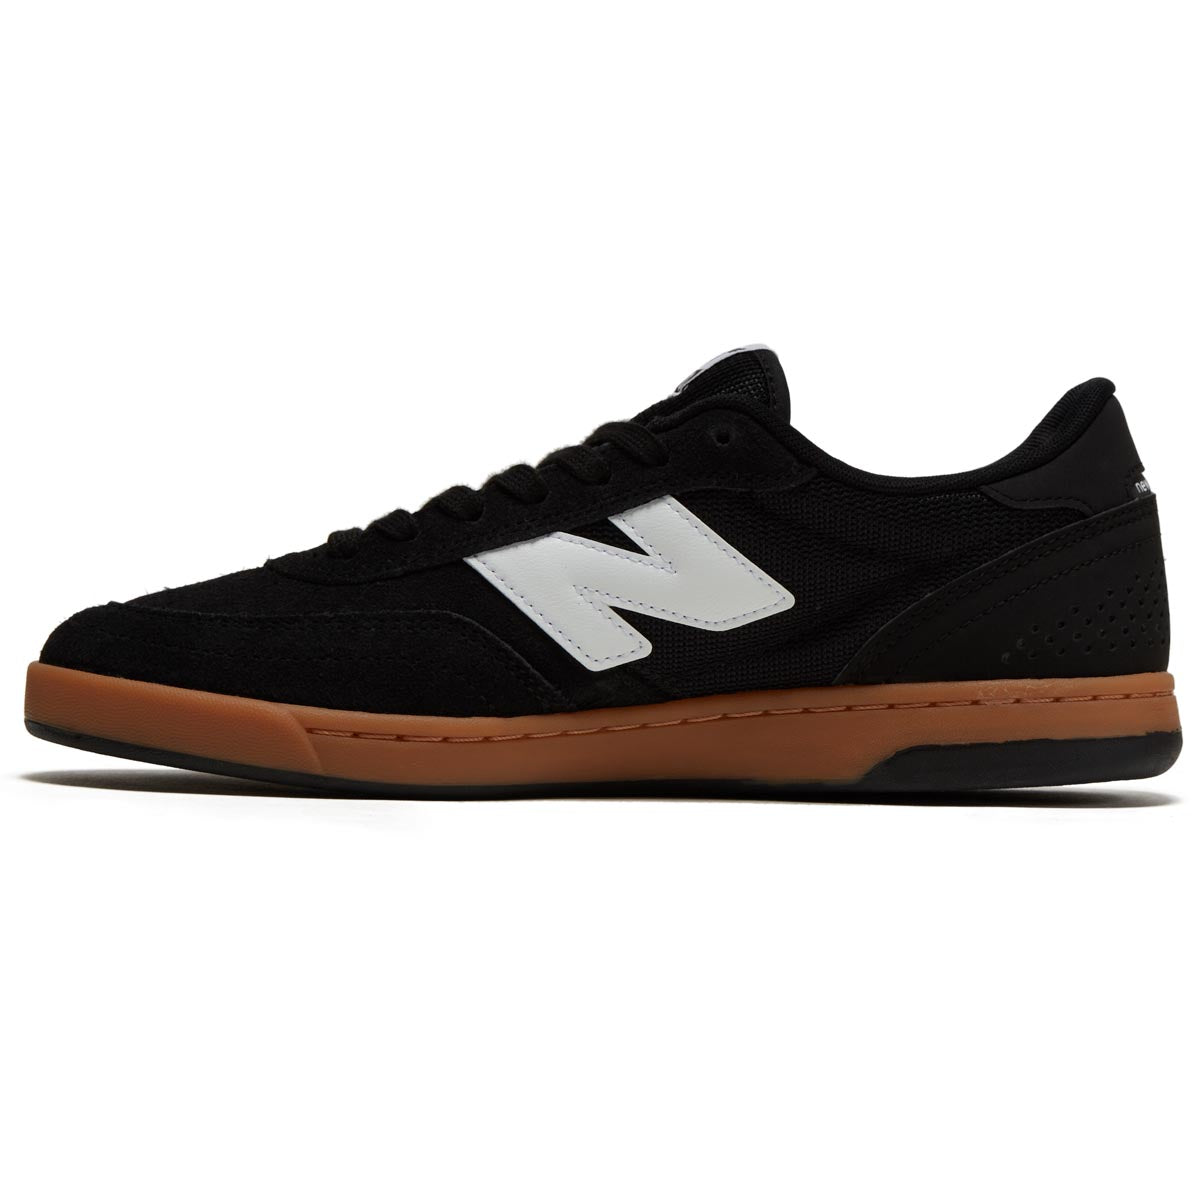 New Balance 440 V2 Shoes - Black image 2